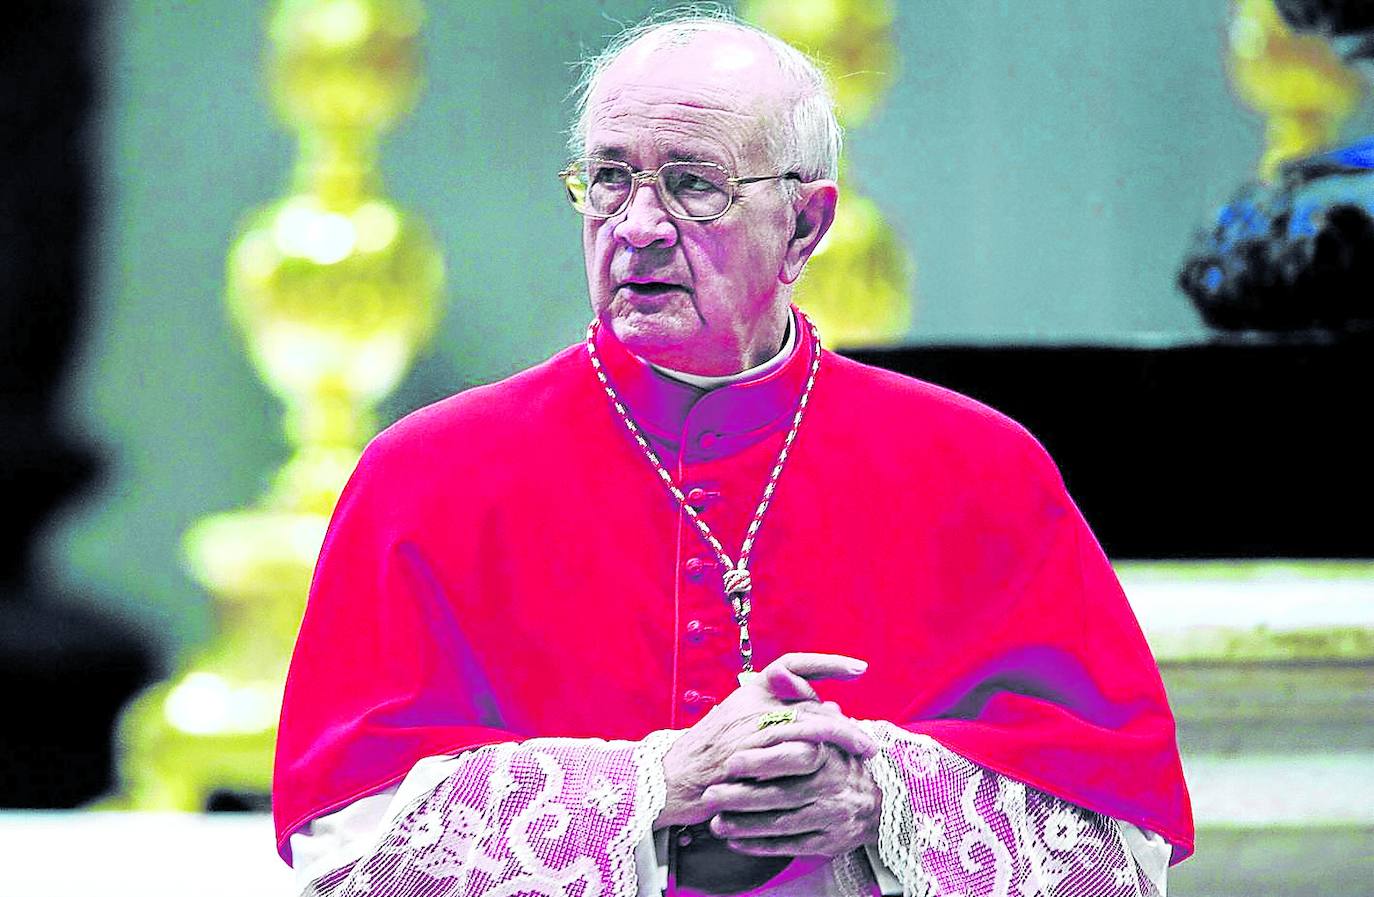 El cardenal riojano ejerció de párroco en su diócesis, pero enseguida recaló en Roma enviado al Pontificio Colegio Español. /E.C.